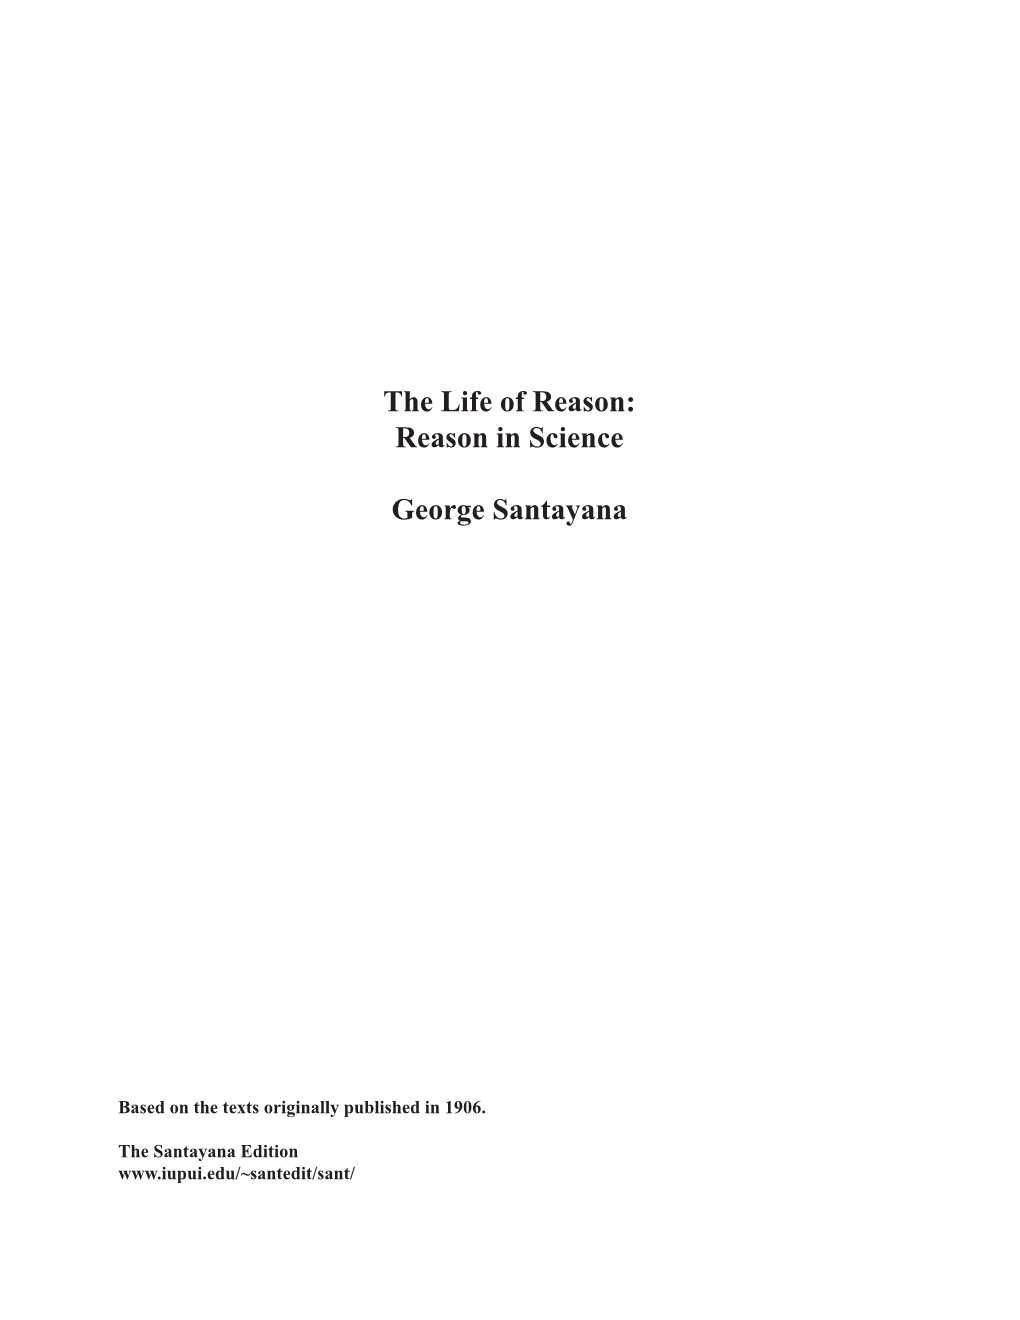 Reason in Science George Santayana